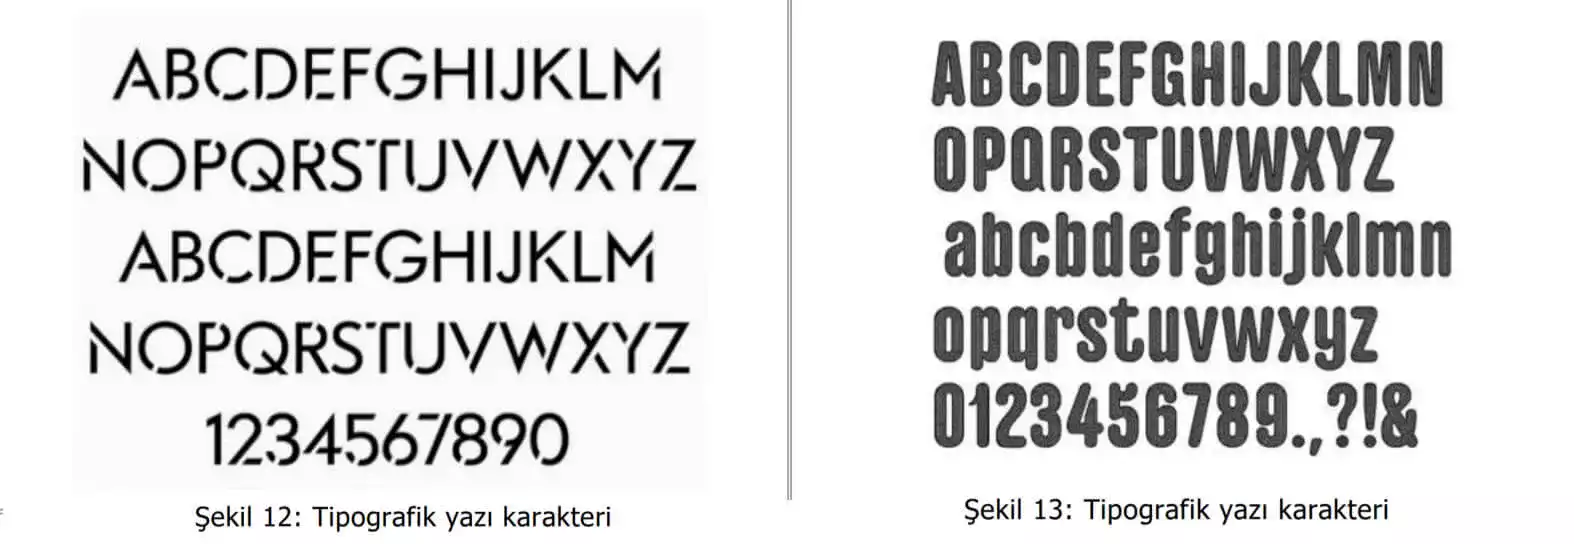 tipografik yazı karakter örnekleri-Patent Gaziantep